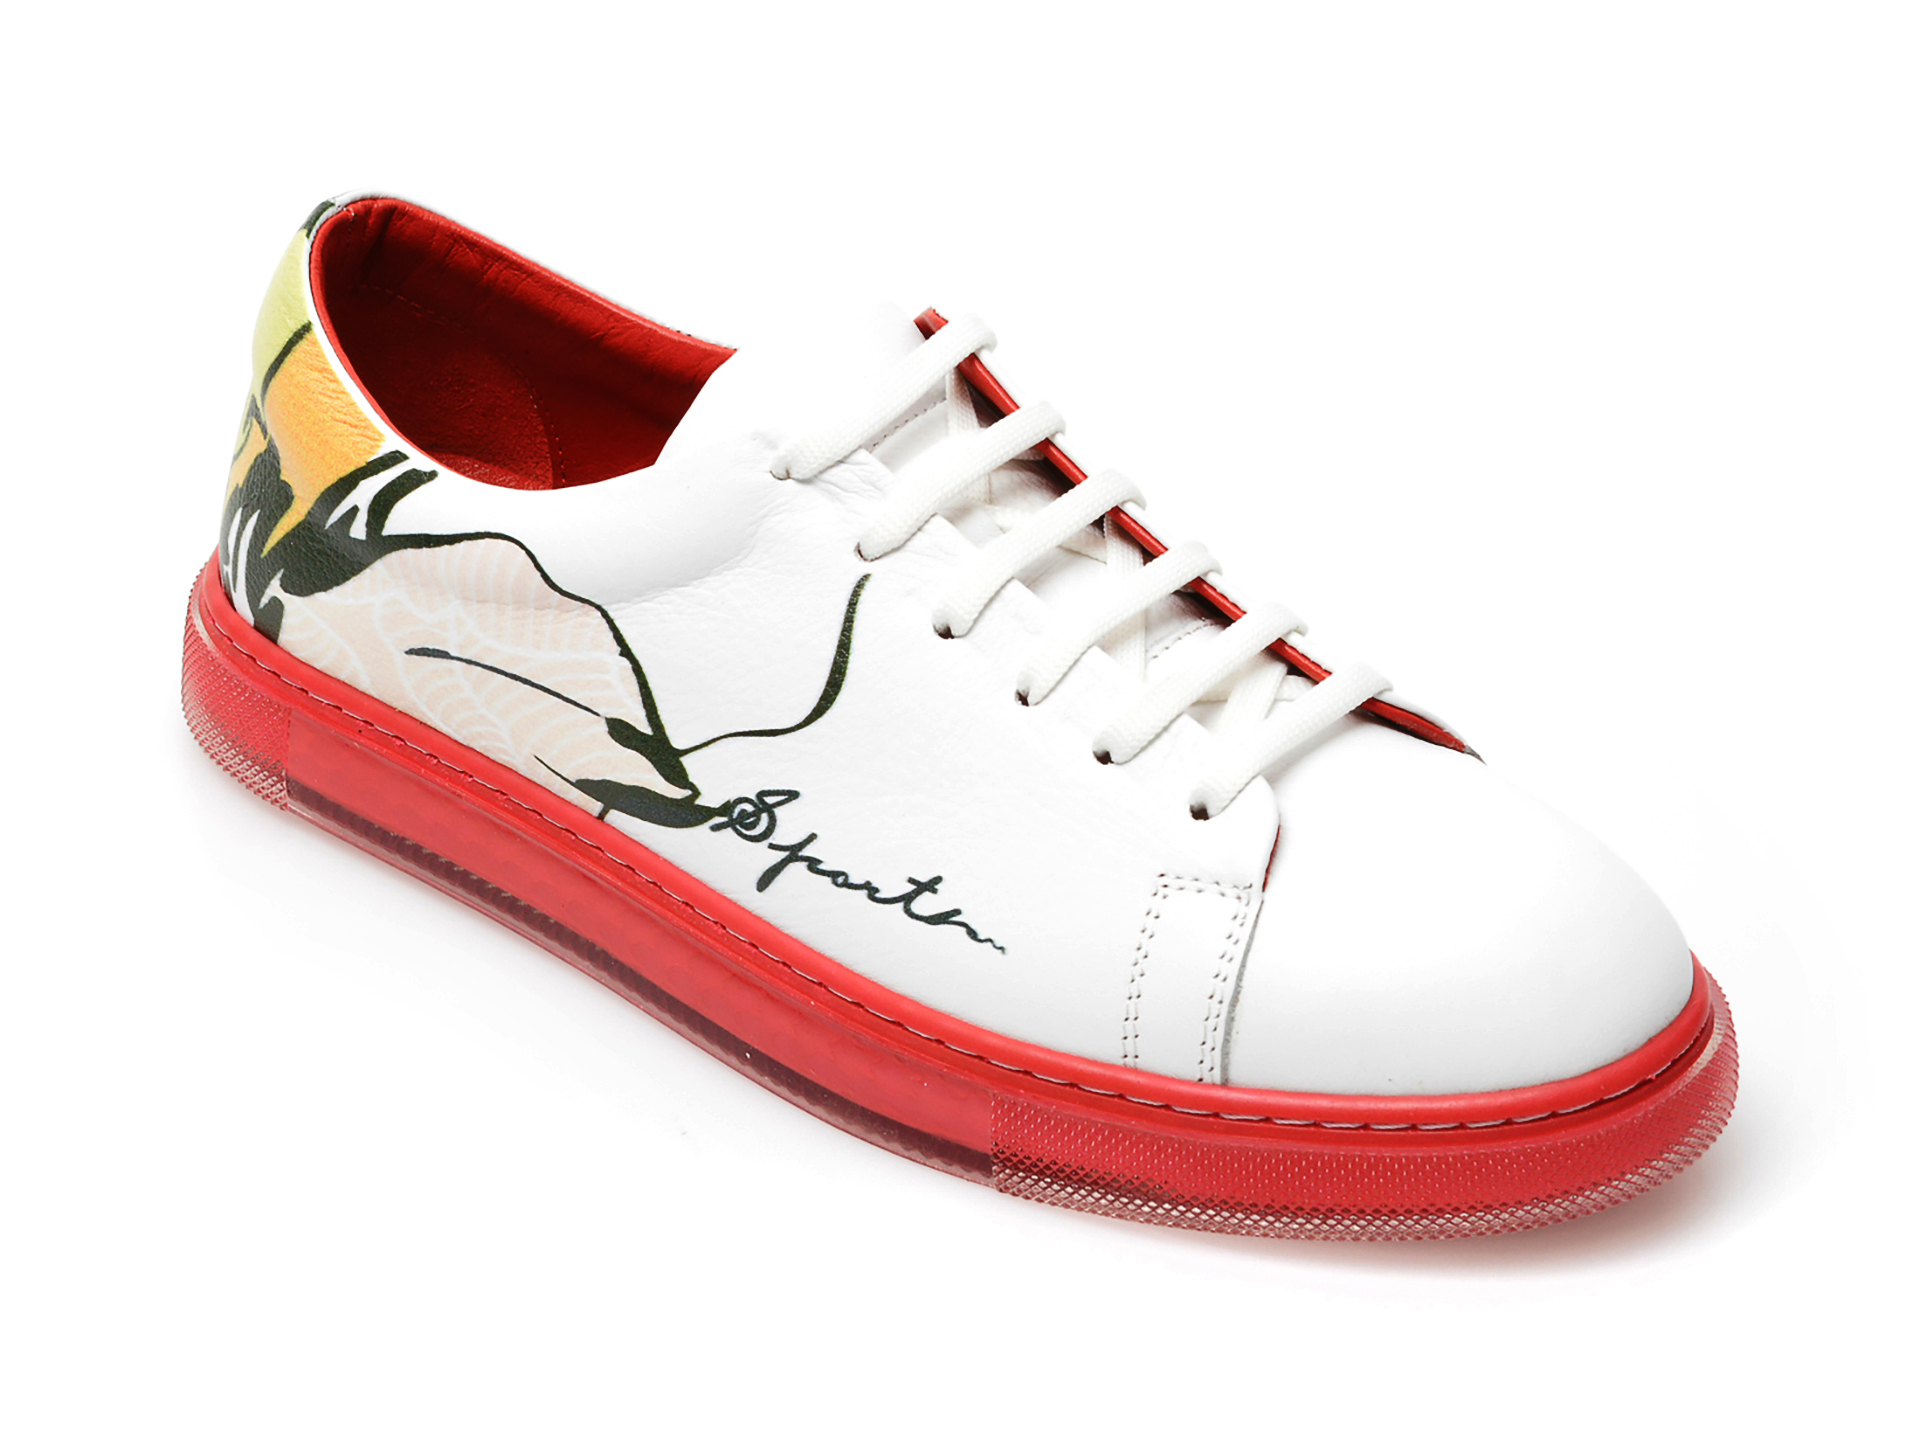 Pantofi sport FLAVIA PASSINI rosii, 21T1006, din piele naturala Flavia Passini